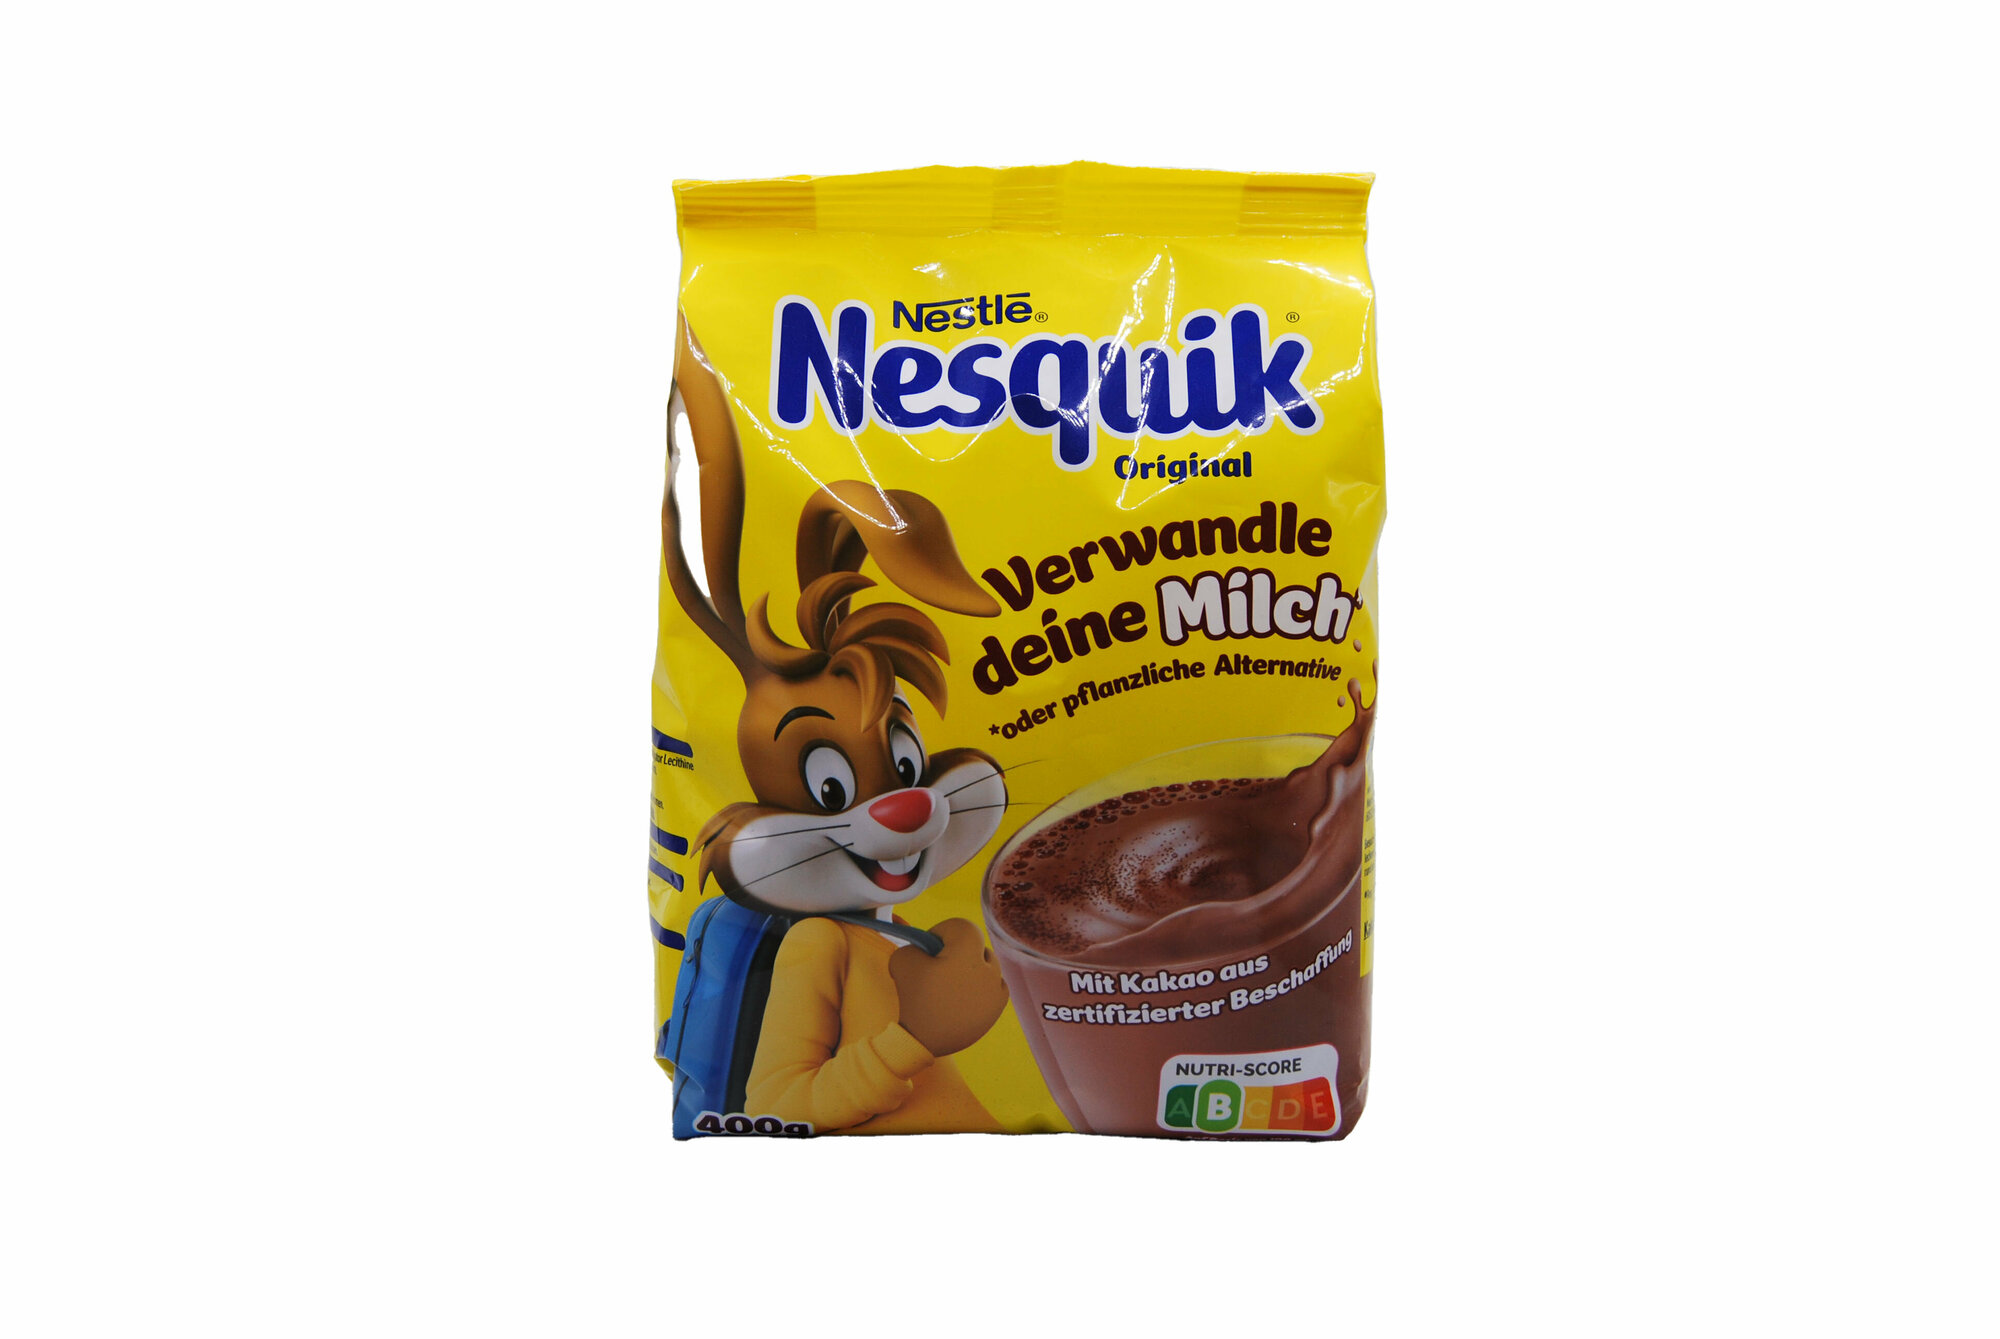 Какао-напиток растворимый Nestlé Nesquik 400г